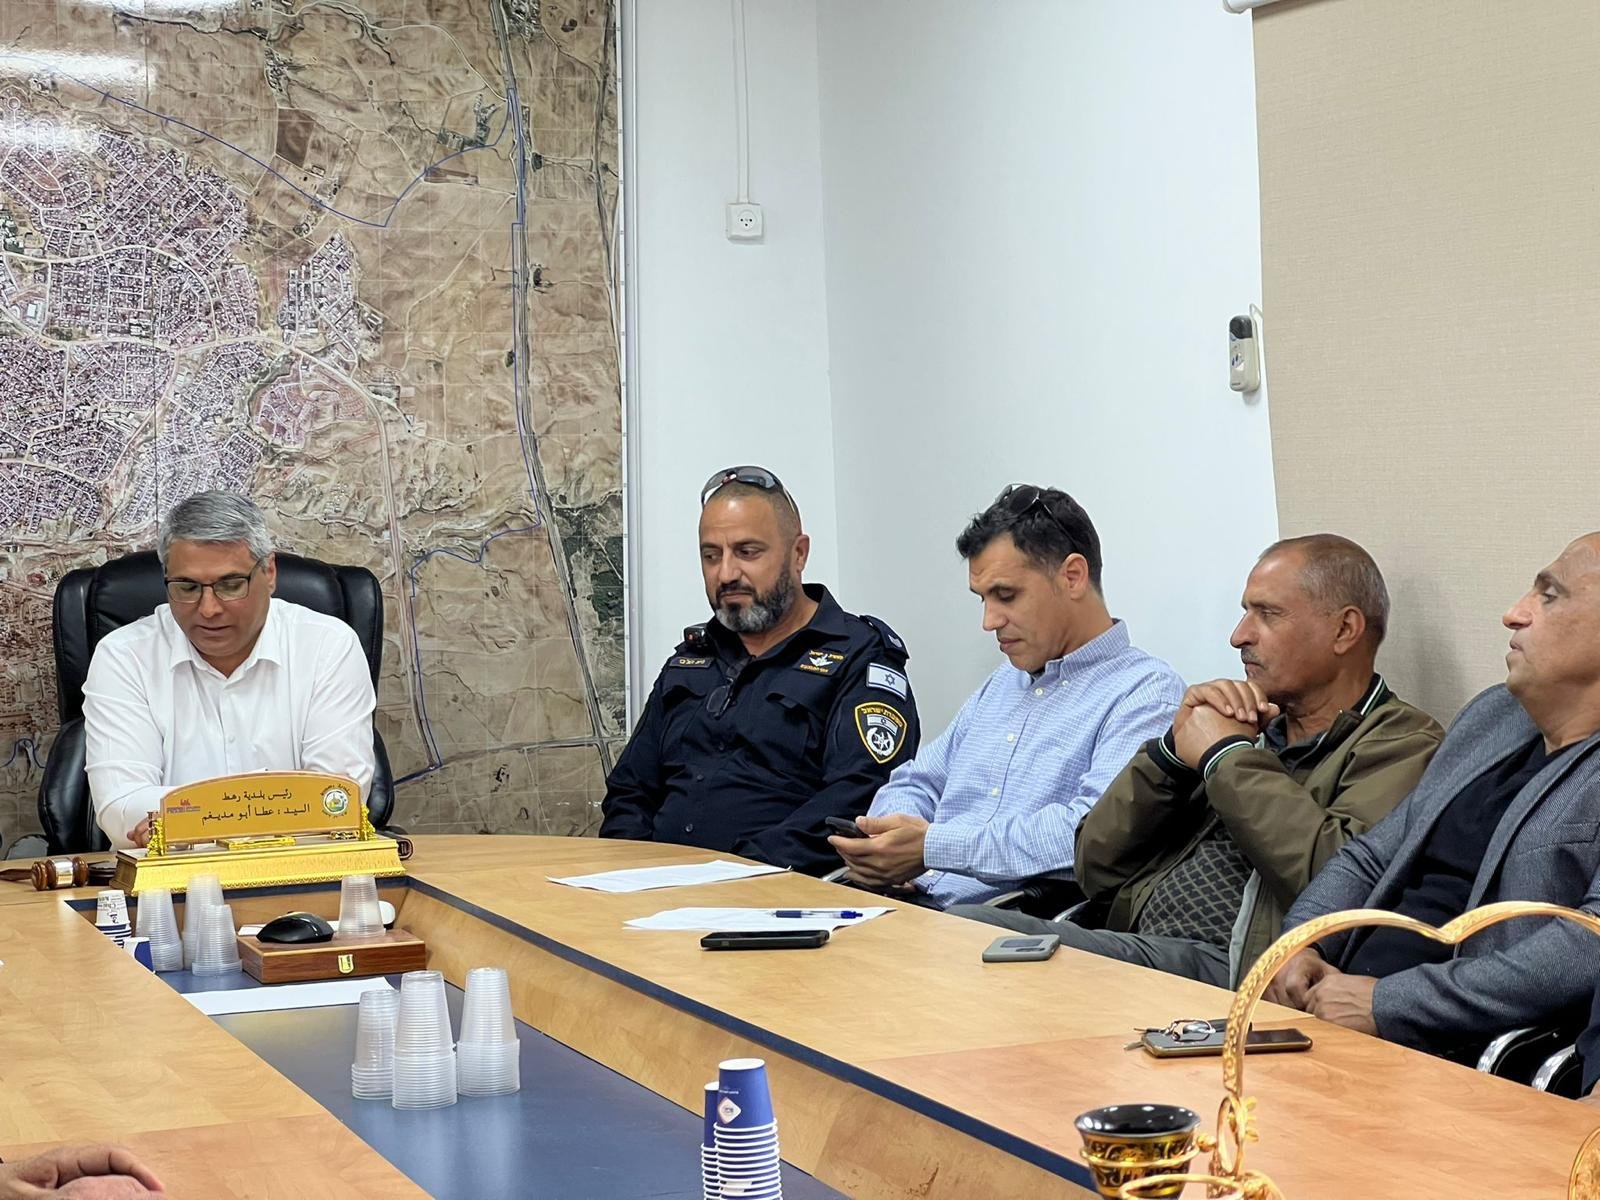 إجتماع للجنة محاربة العنف برهط بدعوة من رئيس اللجنة عطا ابو مديغم رئيس بلدية رهط-12